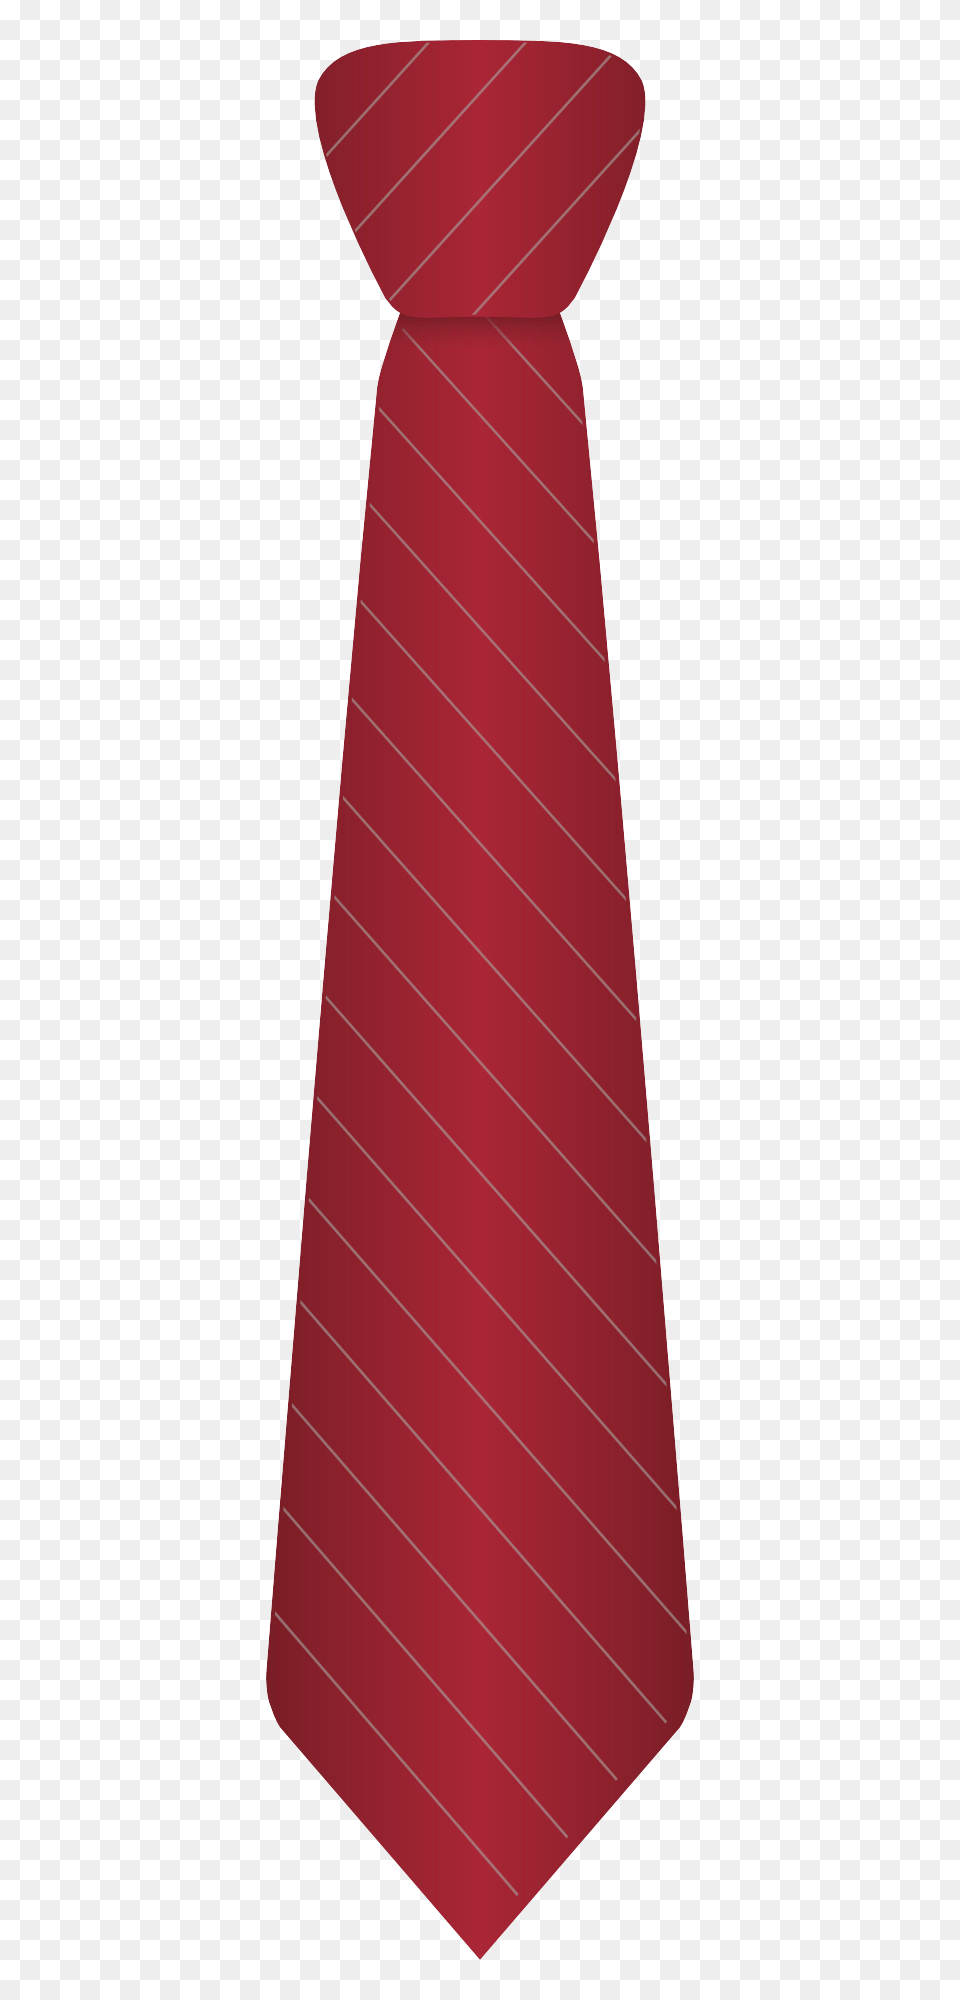 Pngpix Com Necktie Transparent Accessories, Formal Wear, Tie Png Image